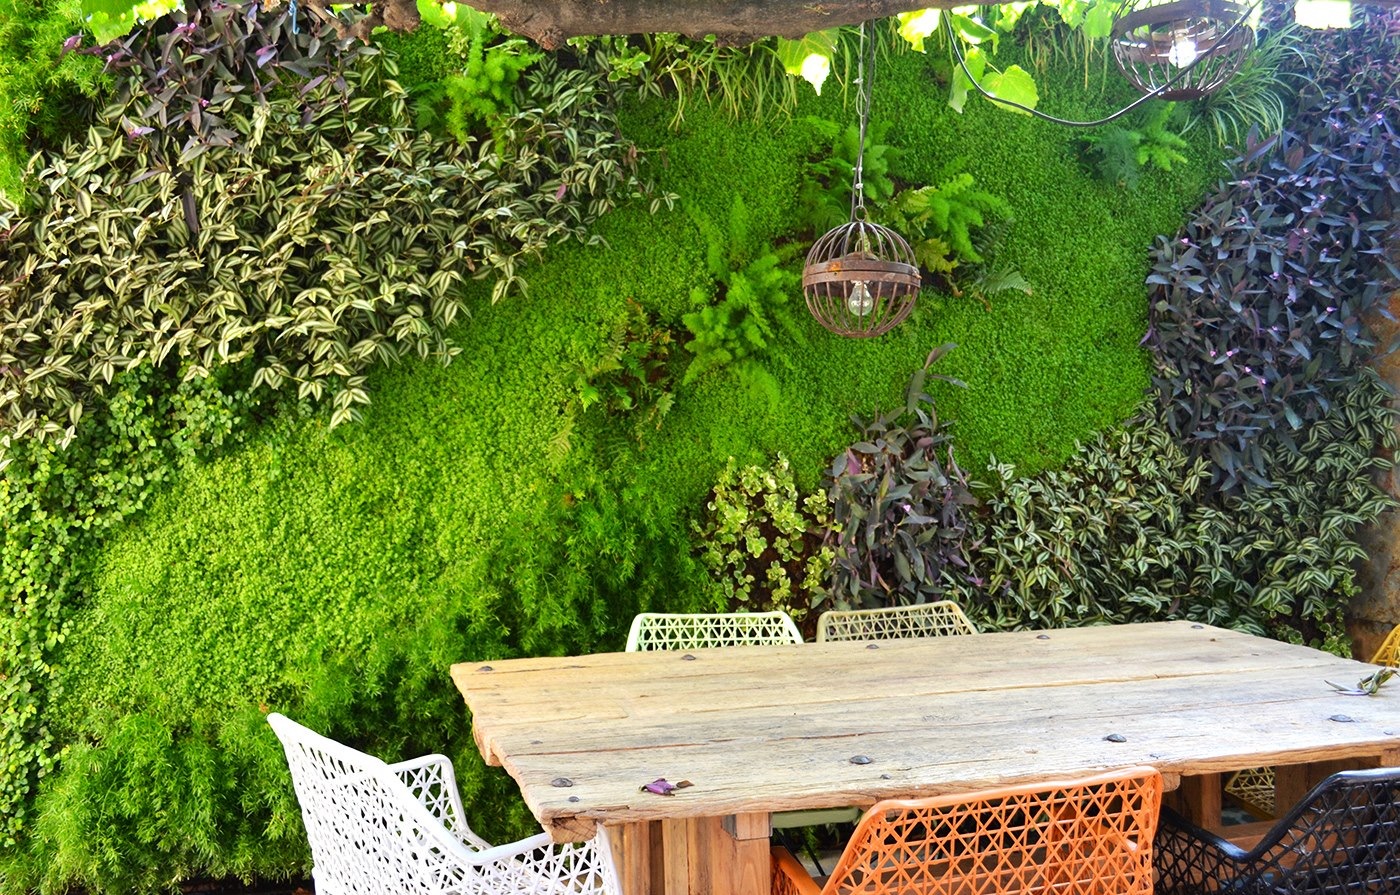 Musgogreen: Decoración e interiorismo vegetal, jardines verticales,  decoración con musgo, proyectos contract.